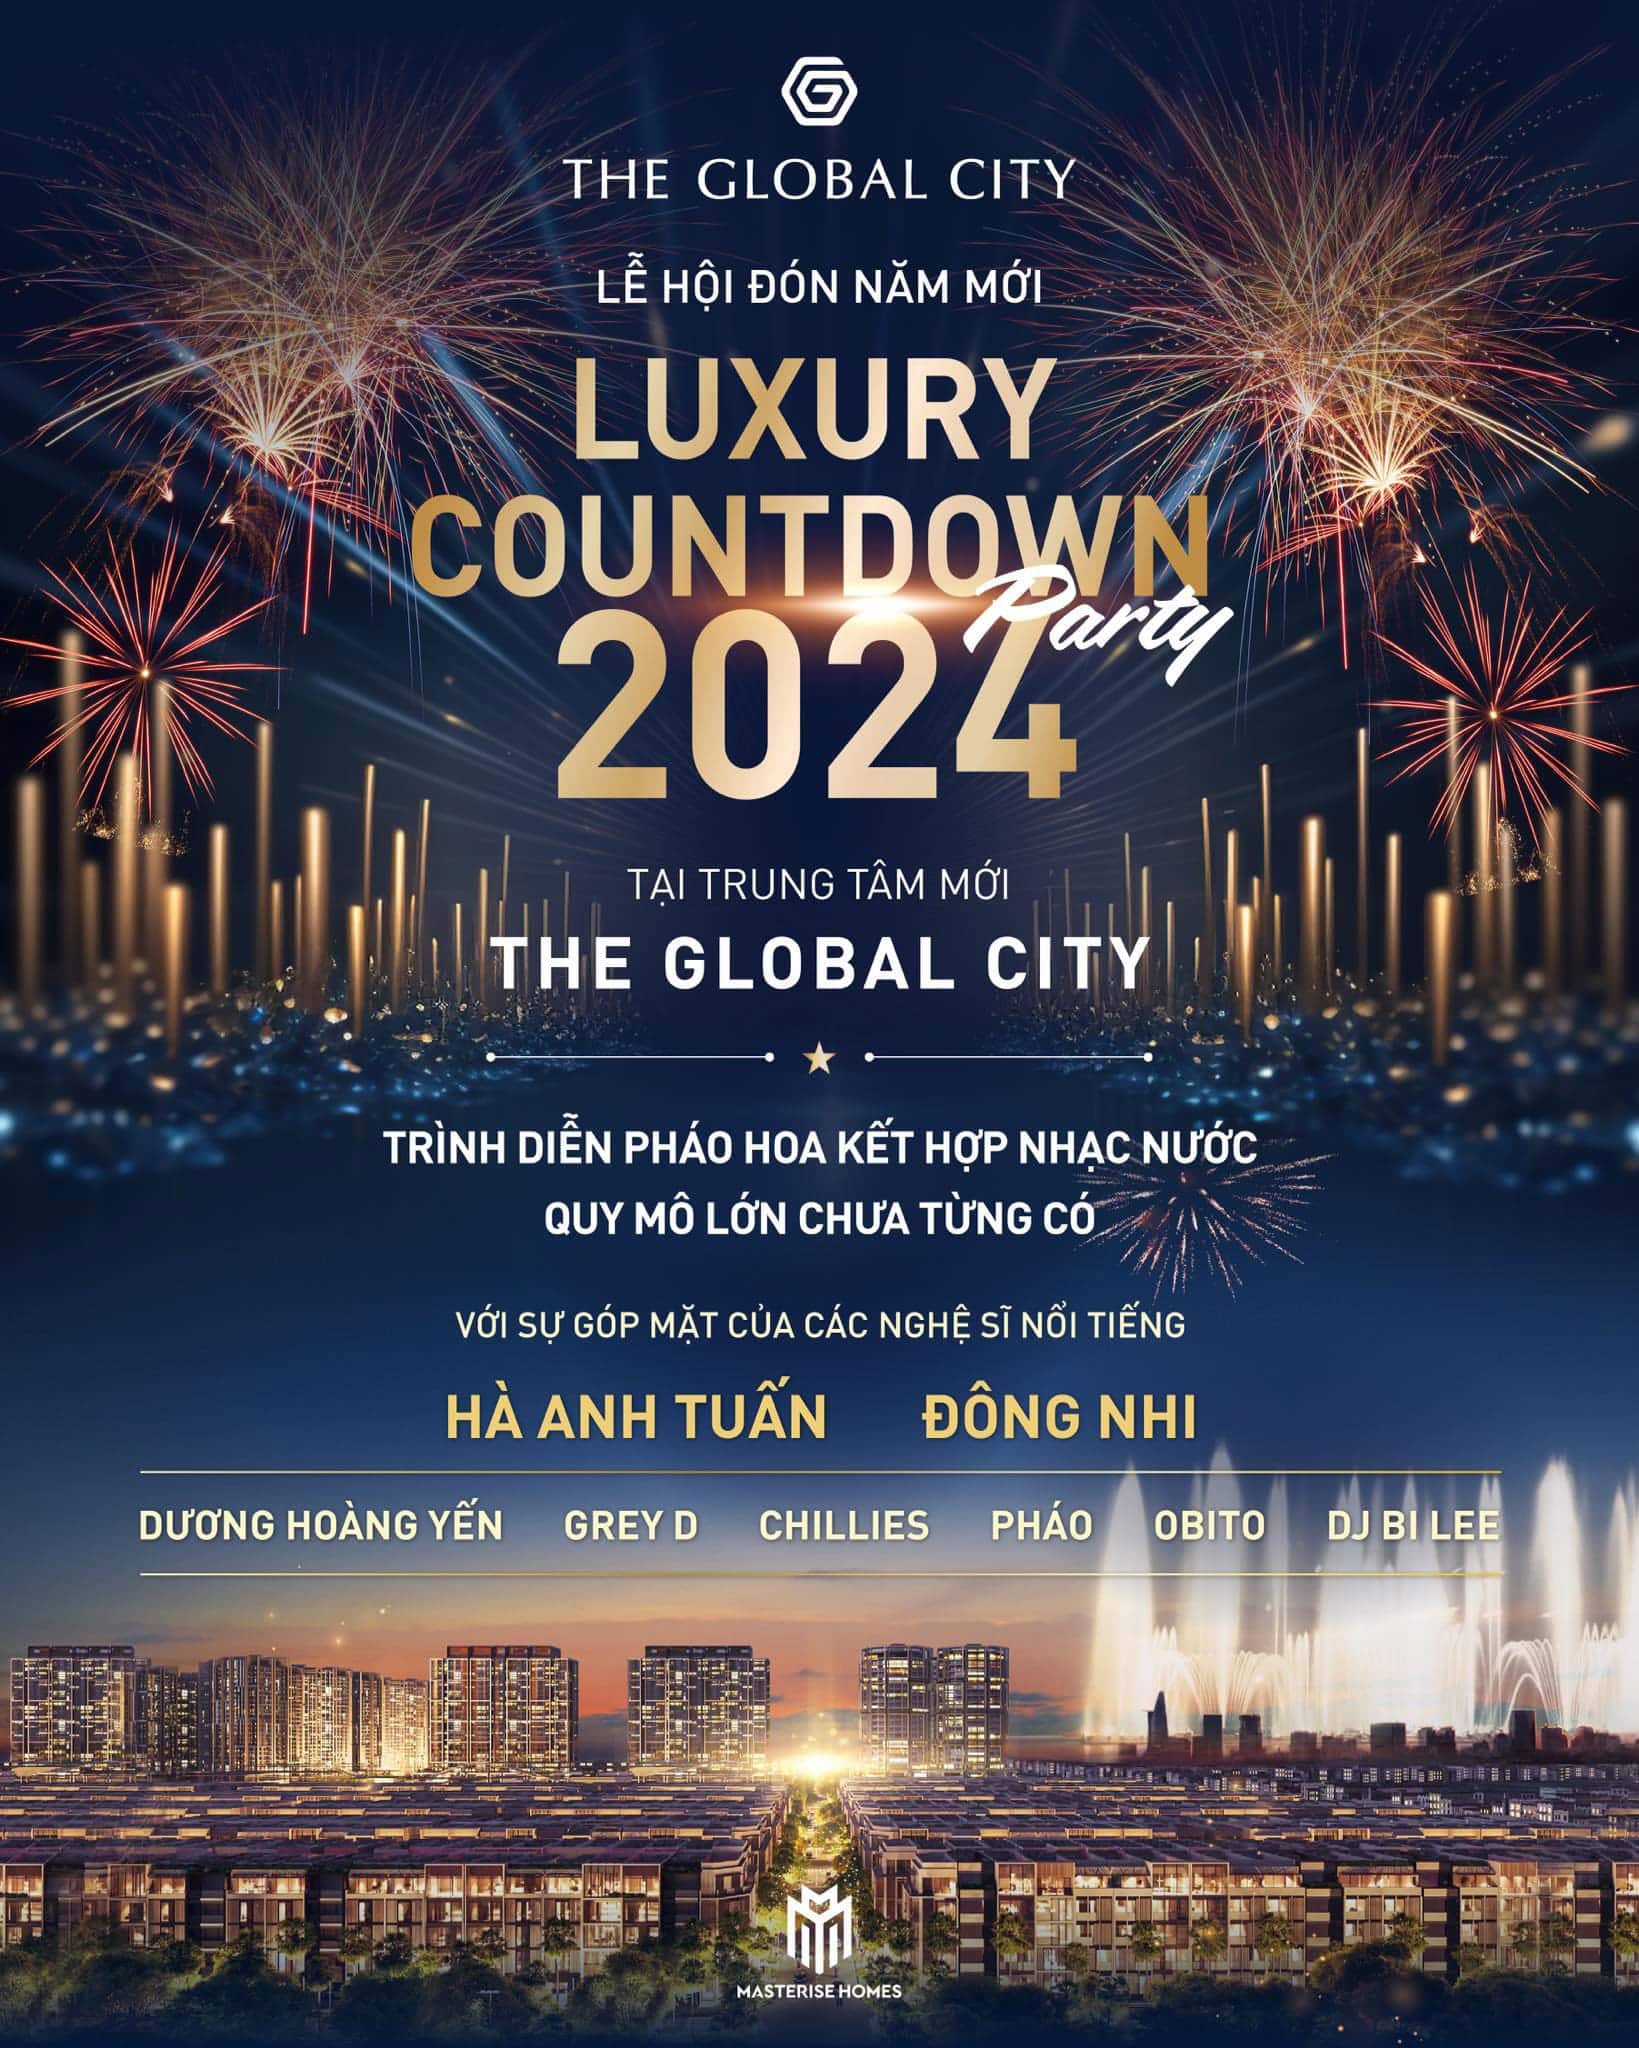 LUXURY COUNTDOWN PARTY 2024 - TẠI THE GLOBAL CITY - TRÌNH DIỄN PHÁO HOA QUY MÔ LỚN CHƯA TỪNG CÓ.